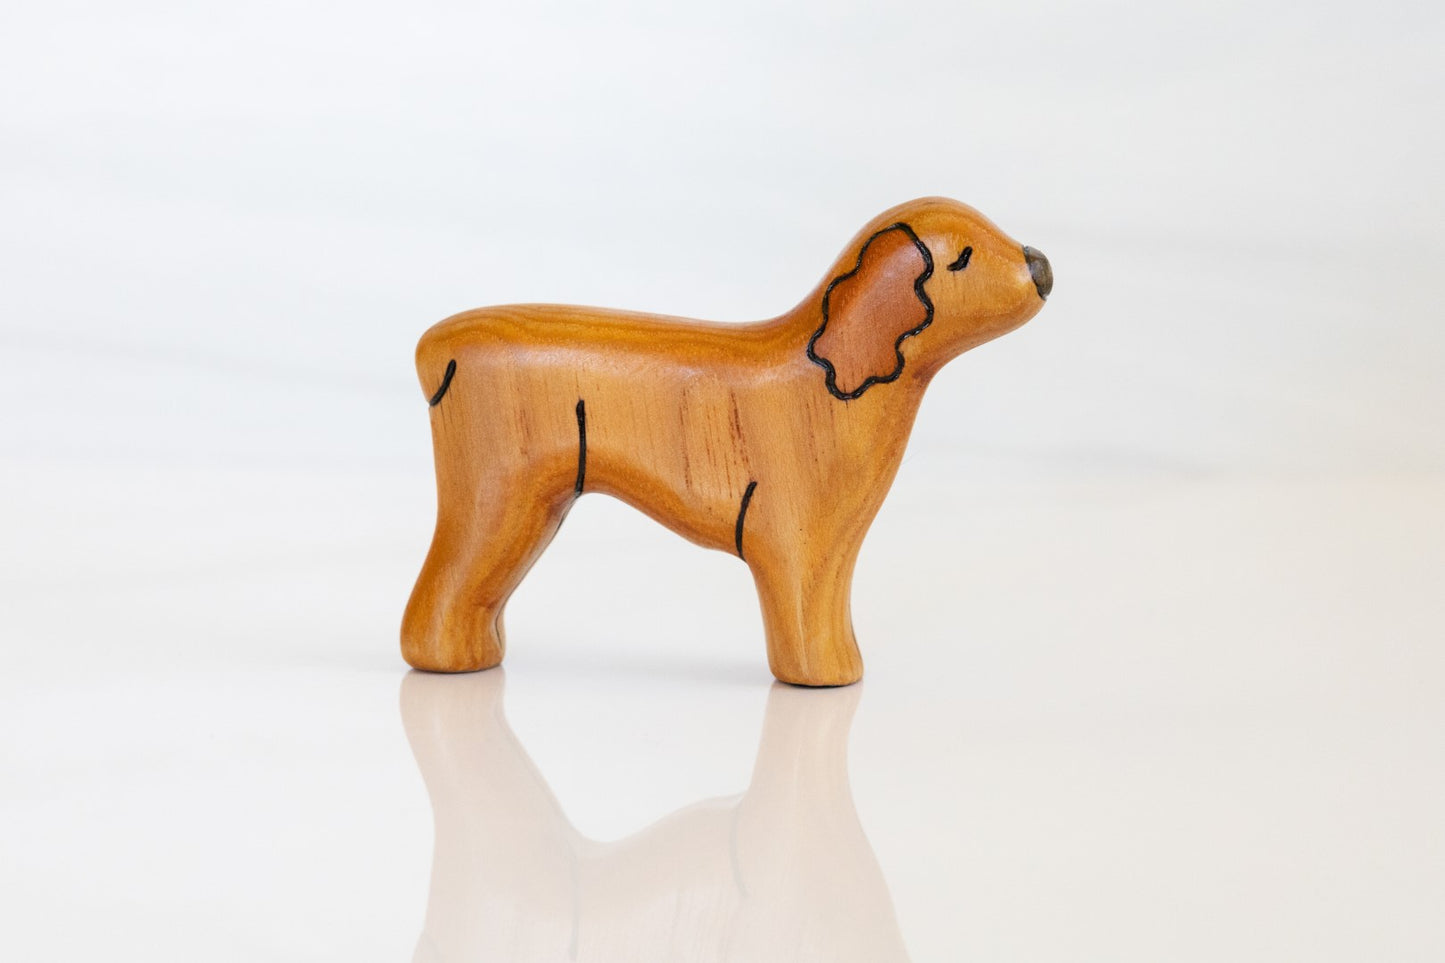 Wooden Cocker Spaniel Toy Dog